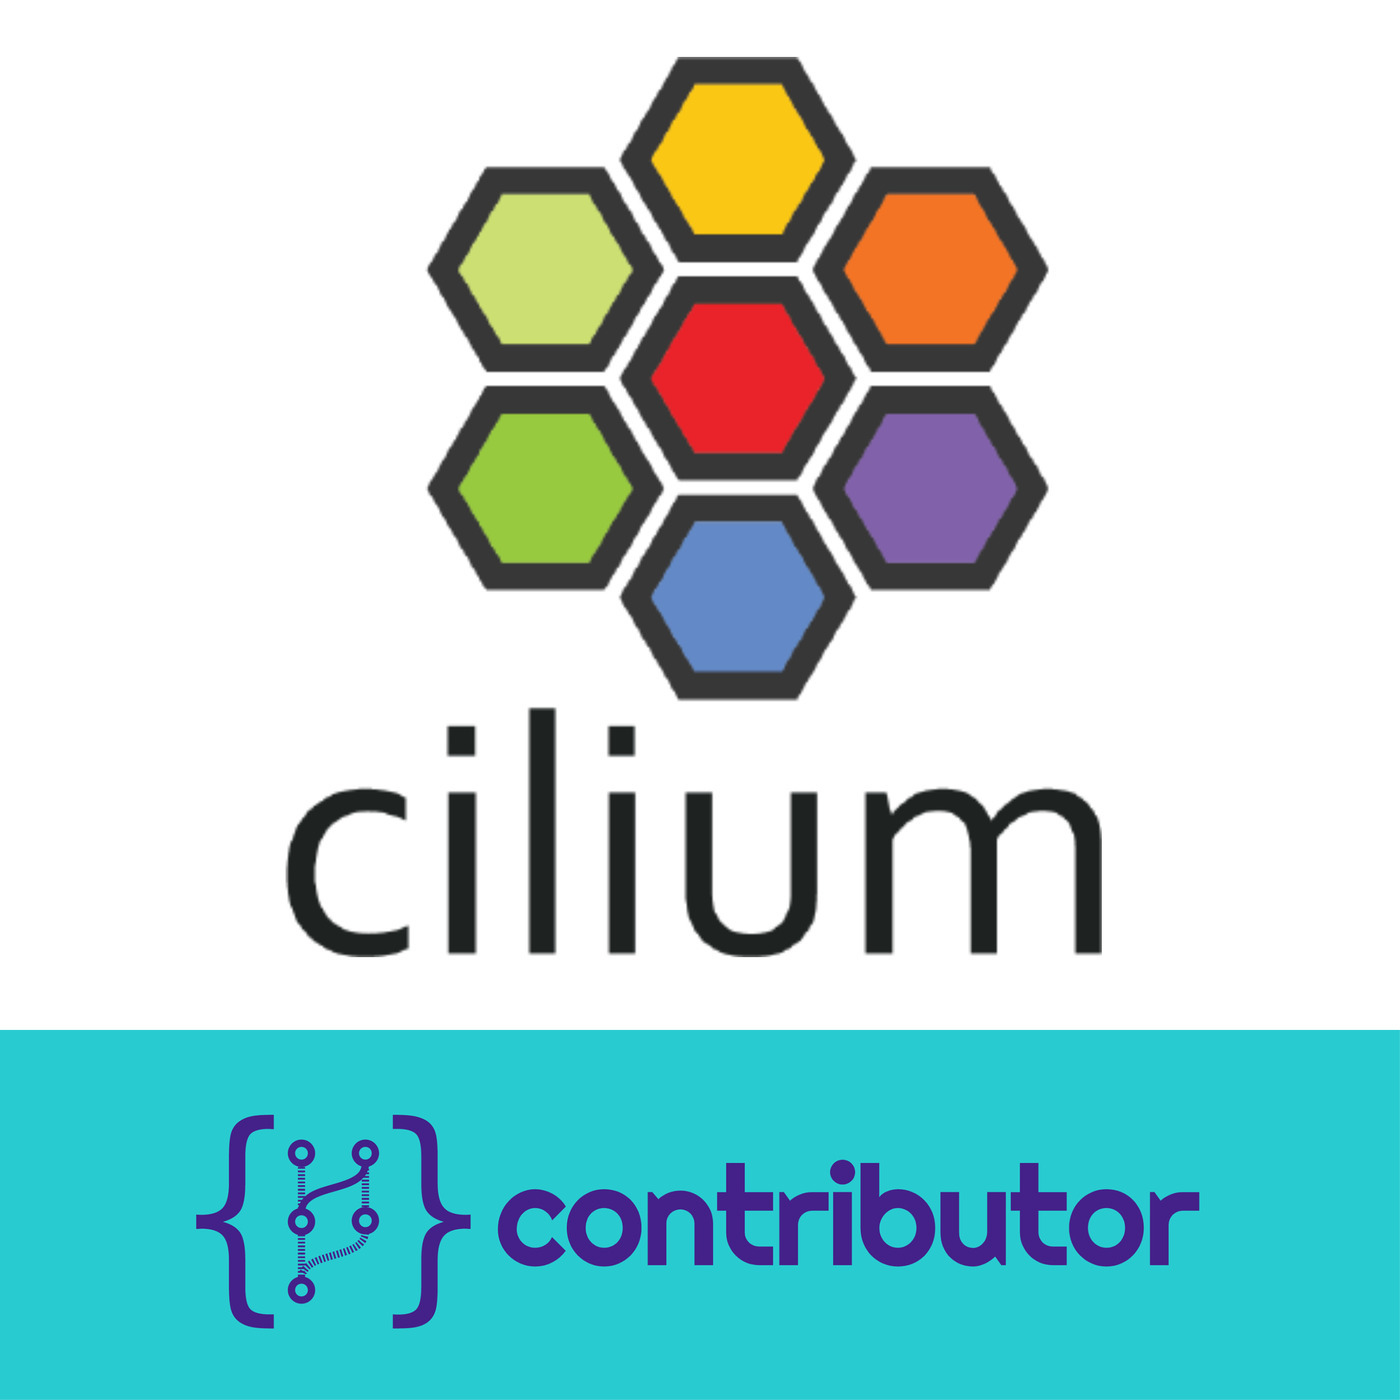 Contributor Podcast - Cilium with Thomas Graf